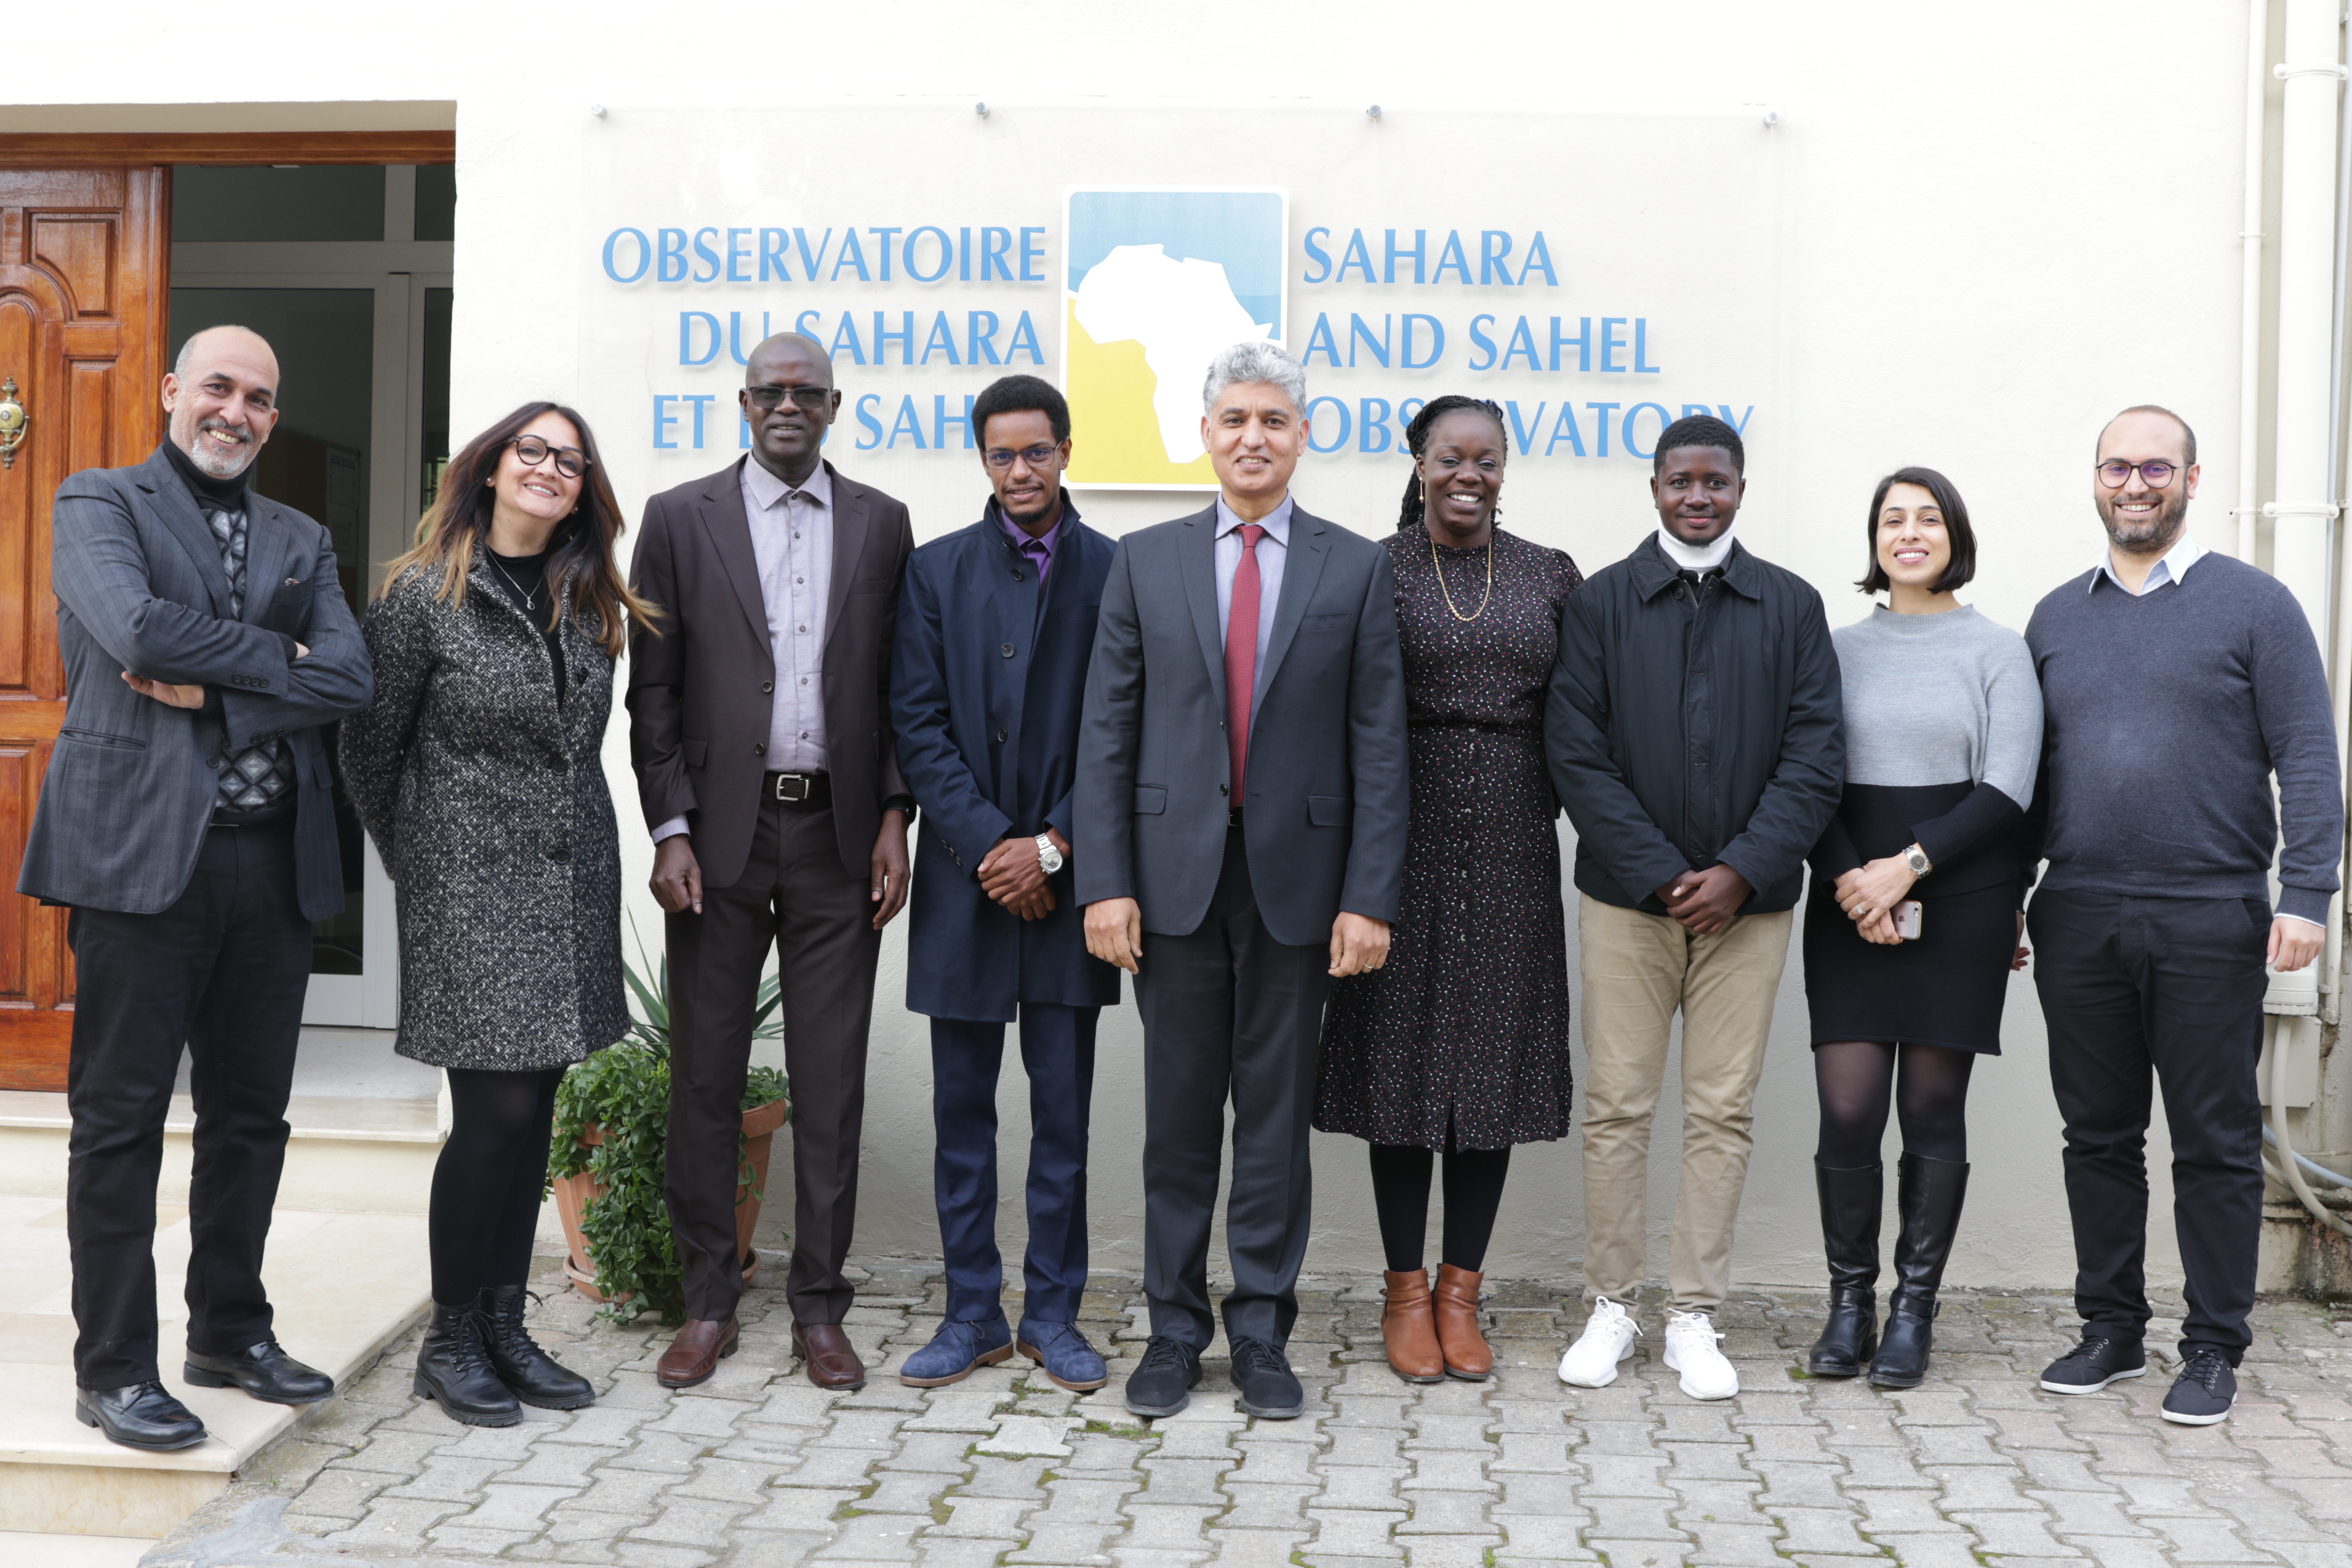  Visite d’échanges du Centre de Suivi Ecologique (CSE) du Sénégal à l’Observatoire du Sahara et du Sahel, 23-25 janvier 2023 